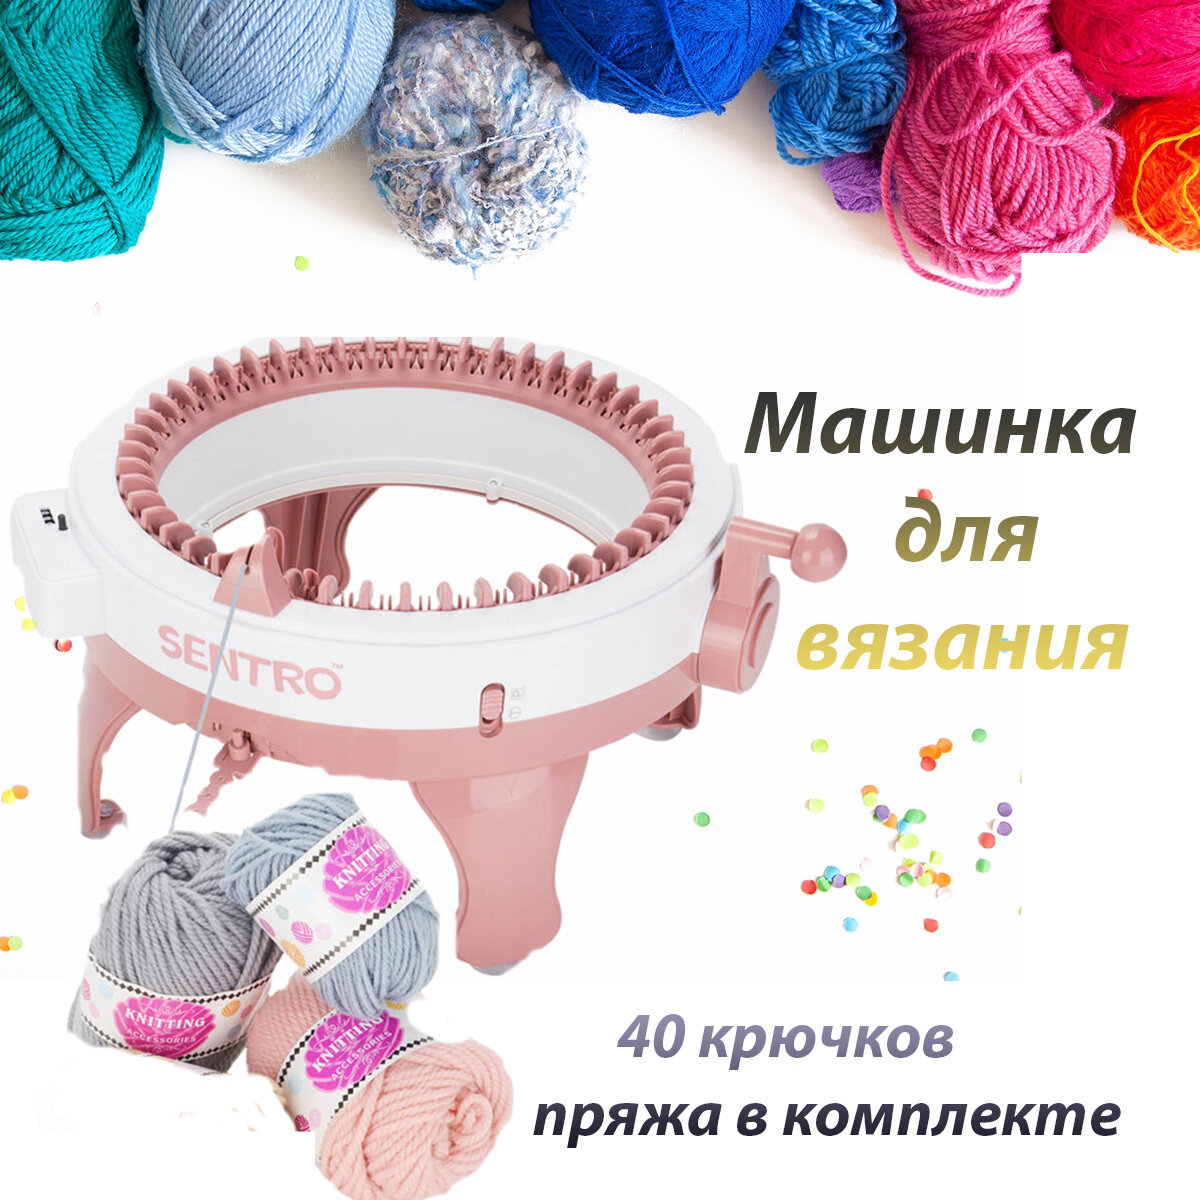 Мельница для вязания 40 петель с пряжей в комплекте /Машинка для вязания круговая шапок изделий носков